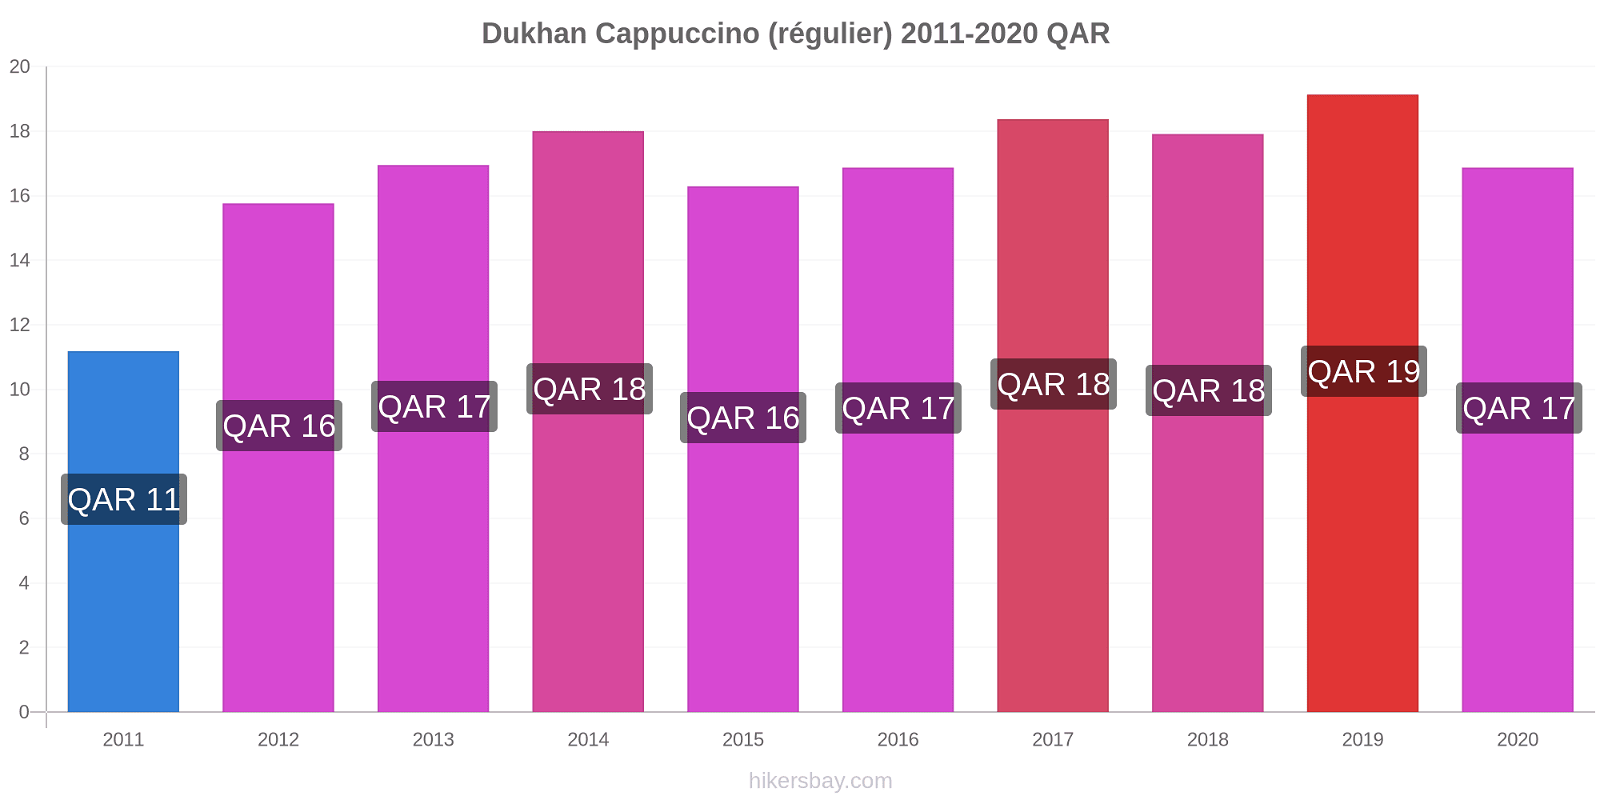 Dukhan changements de prix Cappuccino (régulier) hikersbay.com